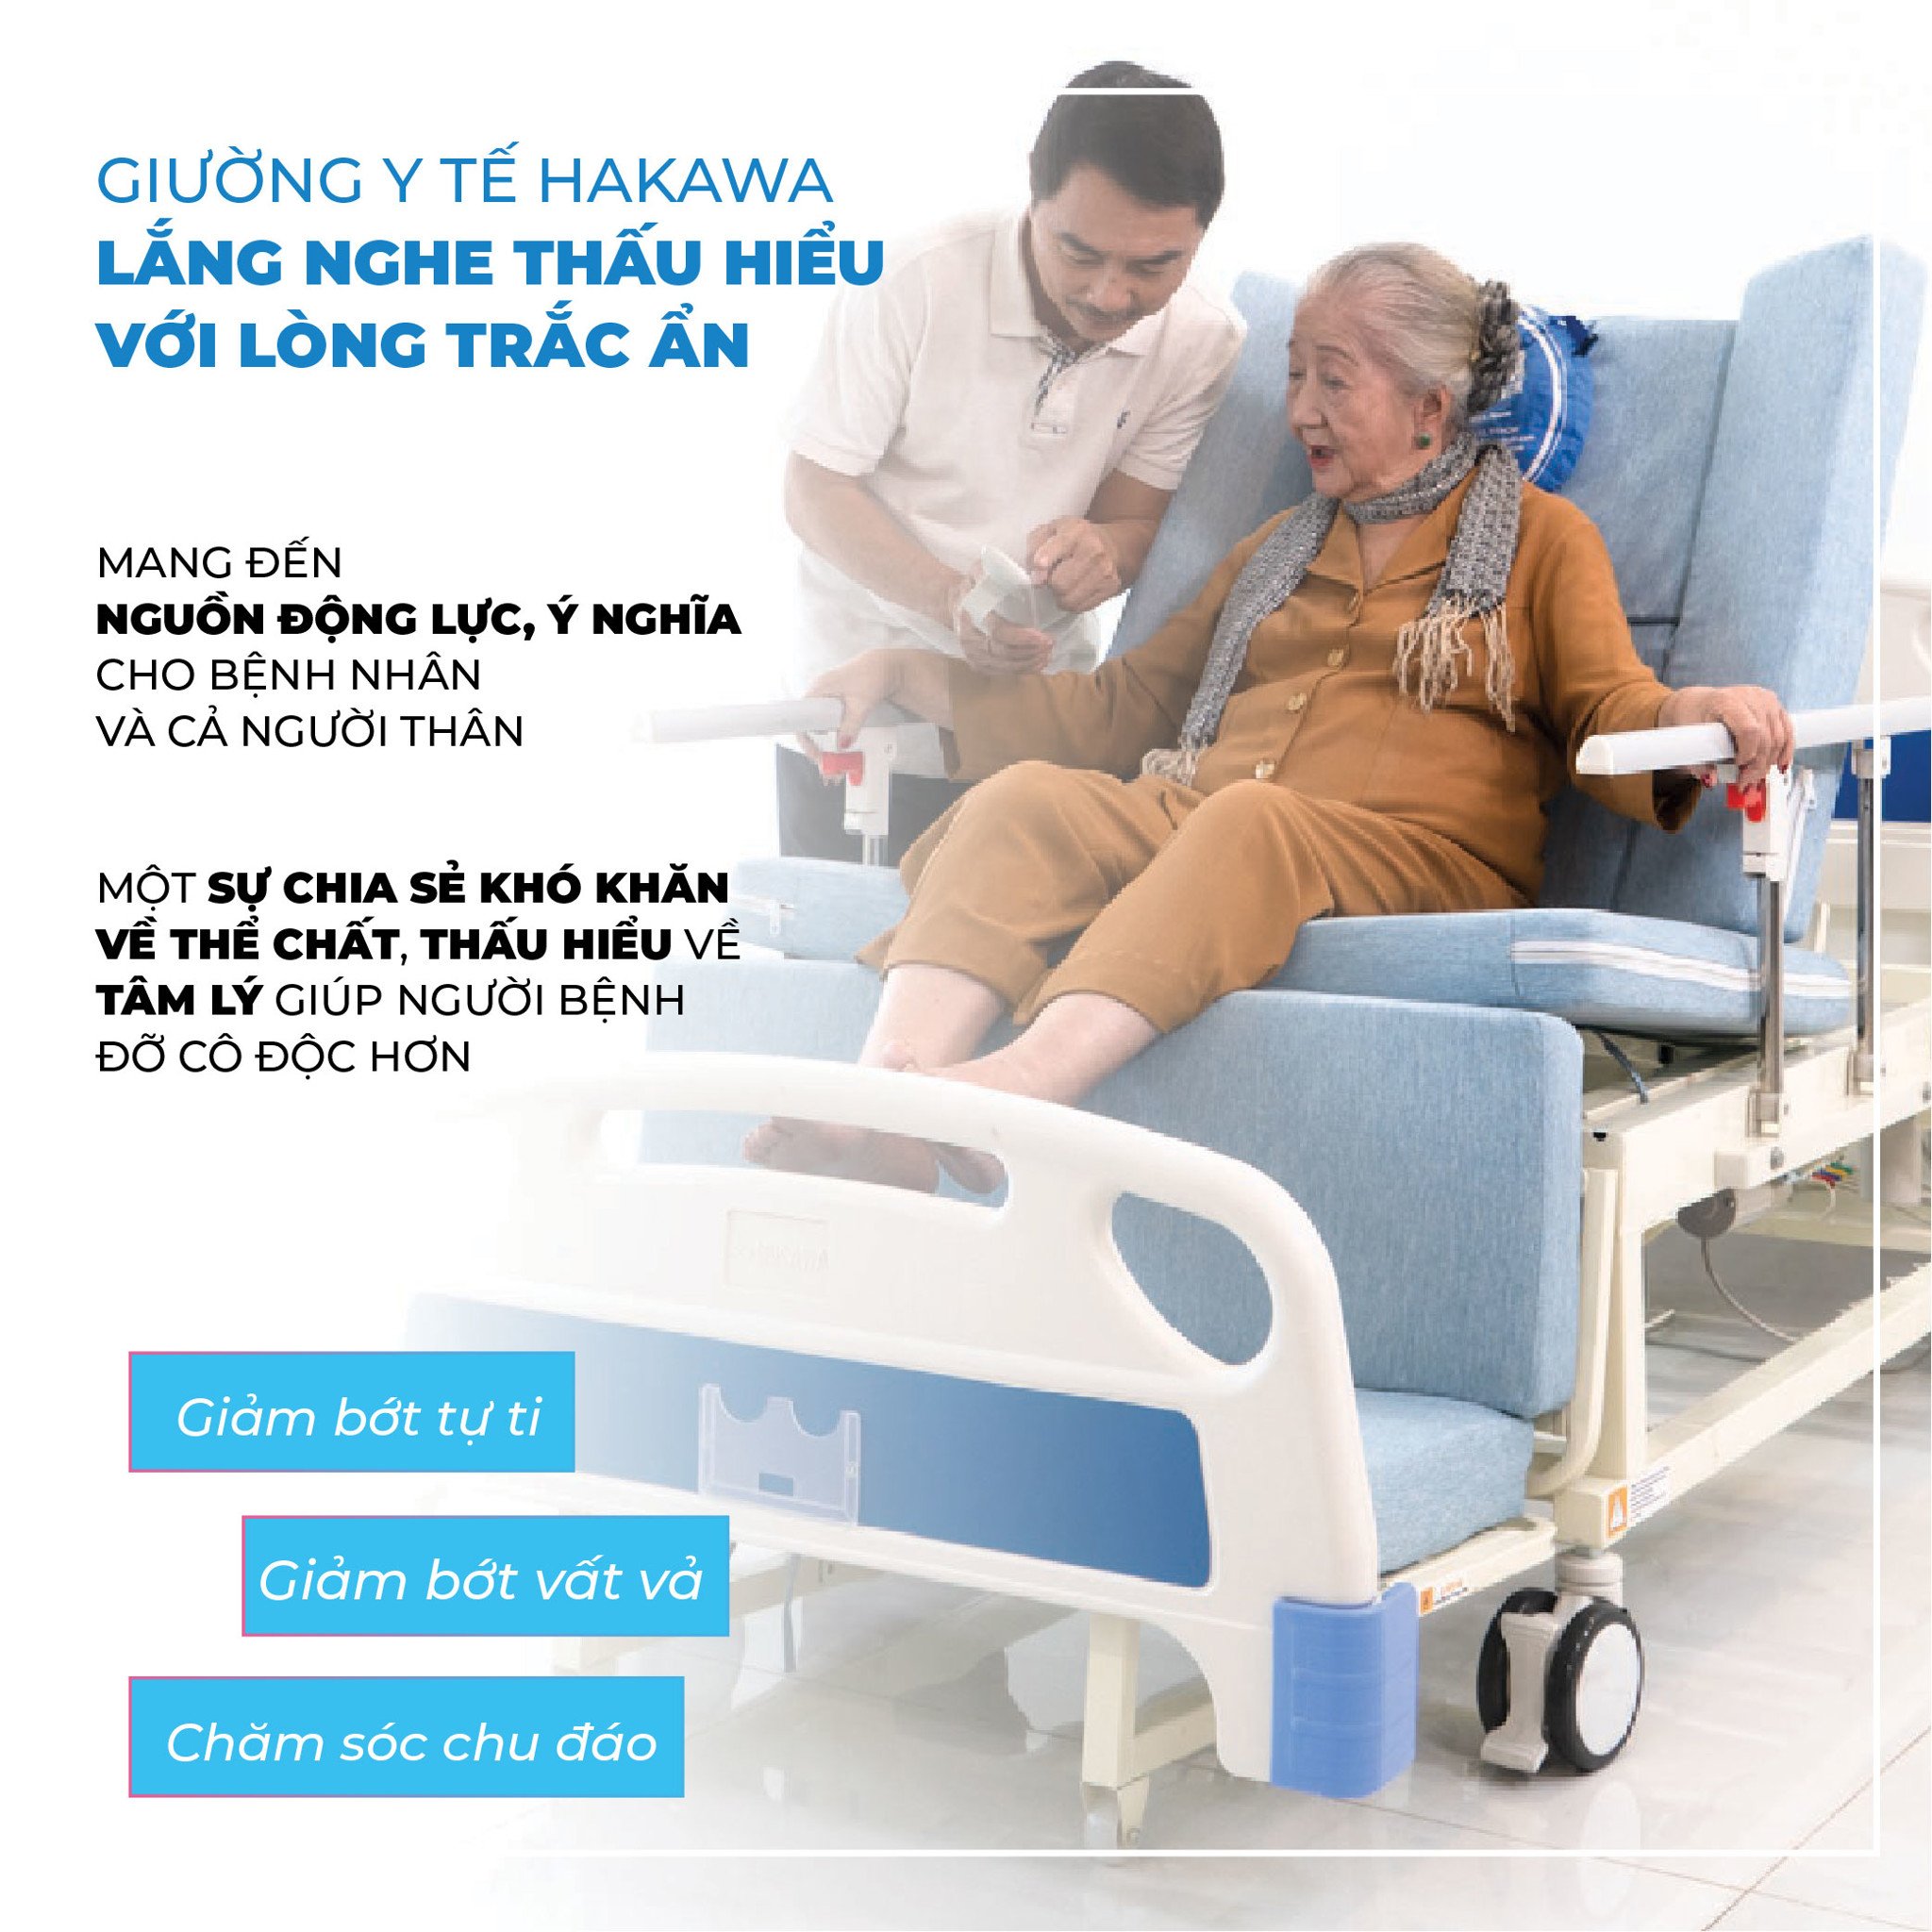 Giường y tế Hakawa là nguồn lực sẻ chia những khó khăn về thể chất, giúp người bệnh được an ủi về tinh thần